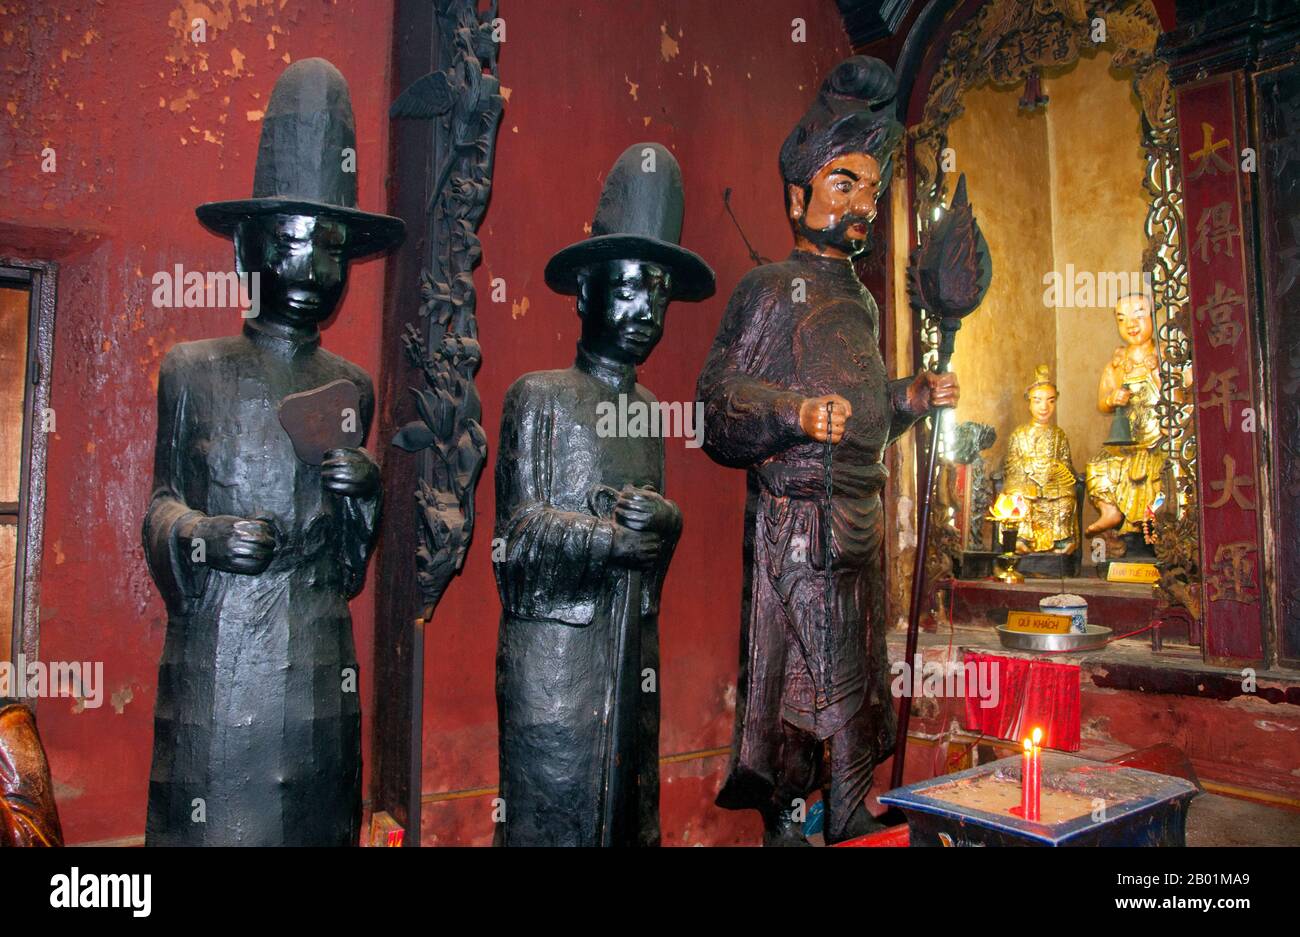 Vietnam : les serviteurs du roi de l'enfer, pagode de l'empereur de Jade, Ho Chi Minh ville (Saigon). Chua Ngoc Hoang ou «Pagode de l'empereur de jade» a été construit en 1909, c'est un temple chinois spectaculairement coloré dédié à Ngoc Huang, empereur de jade du panthéon taoïste. L'Empereur de Jade est le souverain taoïste du ciel et de tous les royaumes d'existence ci-dessous, y compris celui de l'Homme et de l'Enfer, selon la mythologie taoïste. Il est l'un des dieux les plus importants du panthéon de la religion traditionnelle chinoise. Dans la croyance taoïste, l'Empereur de Jade gouverne tout le Royaume des mortels et en dessous. Banque D'Images